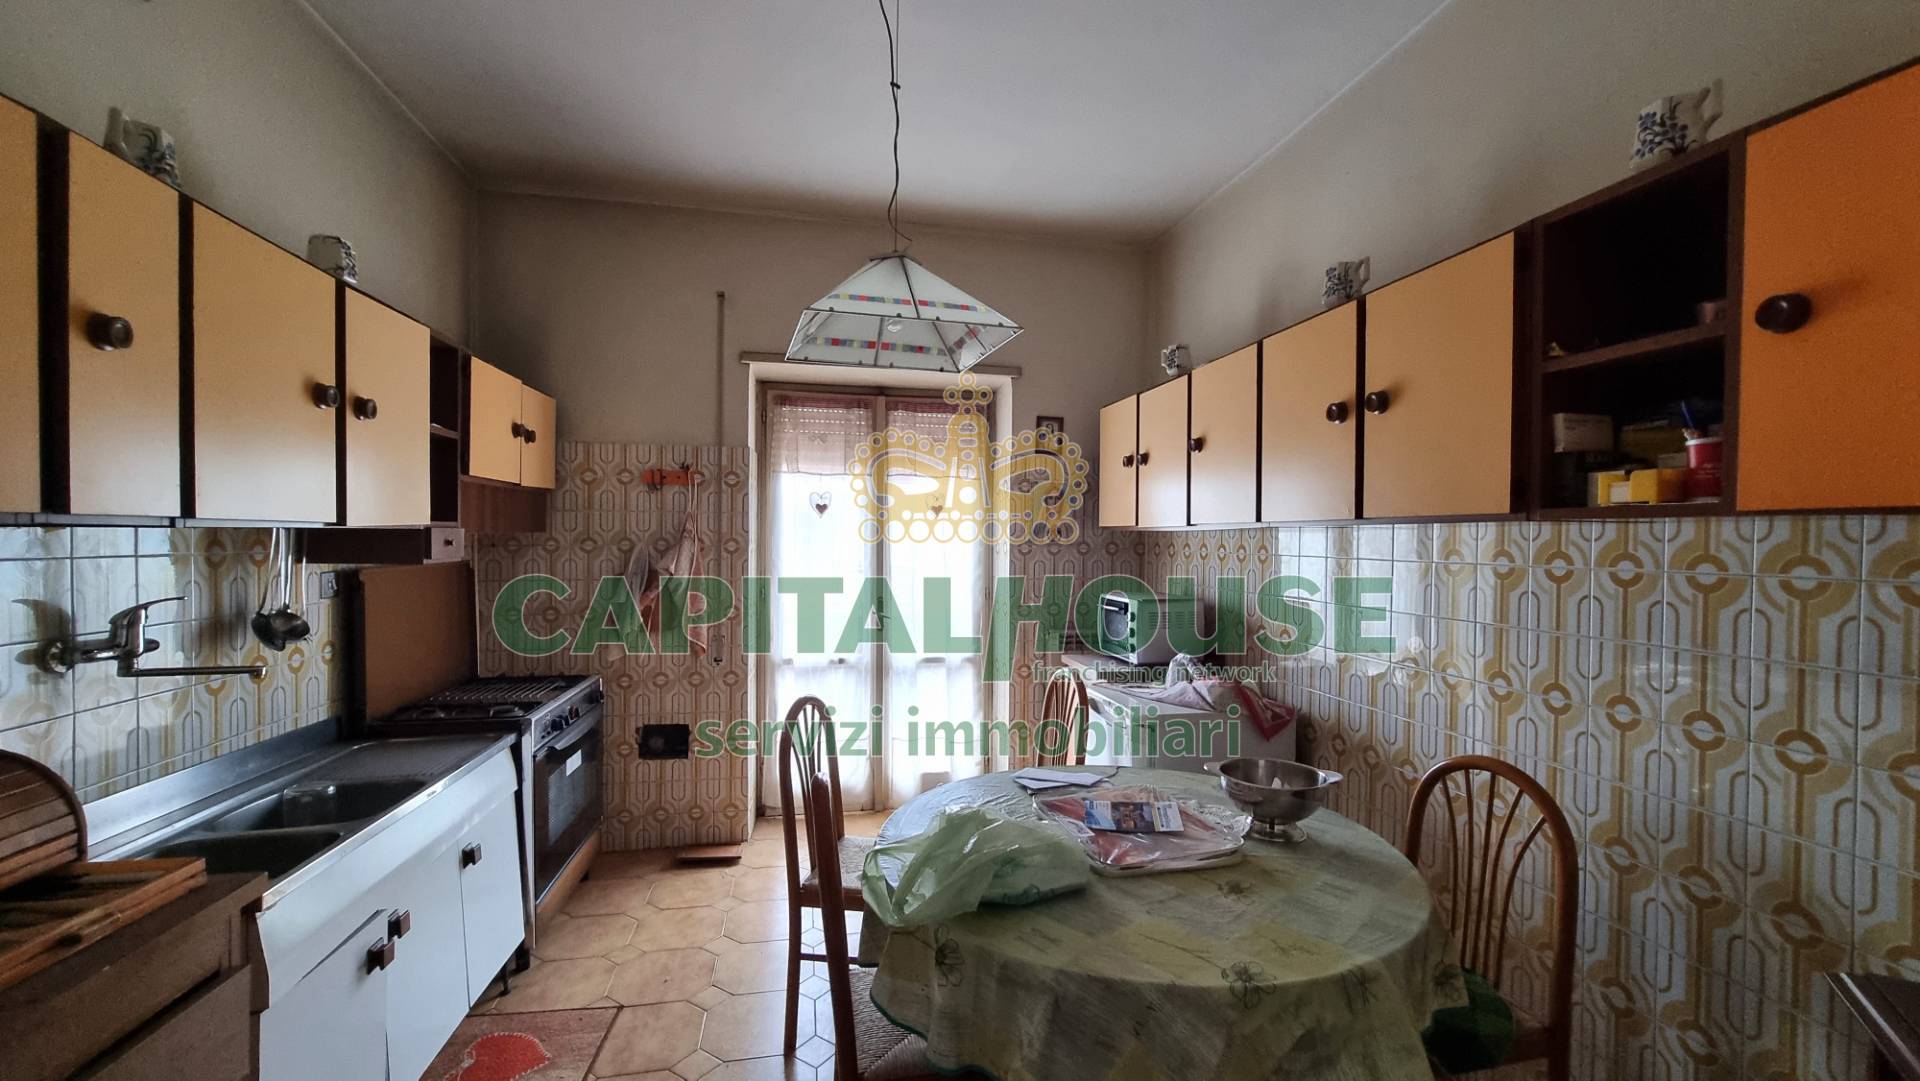 Appartamento in vendita a Casagiove, 5 locali, prezzo € 155.000 | PortaleAgenzieImmobiliari.it